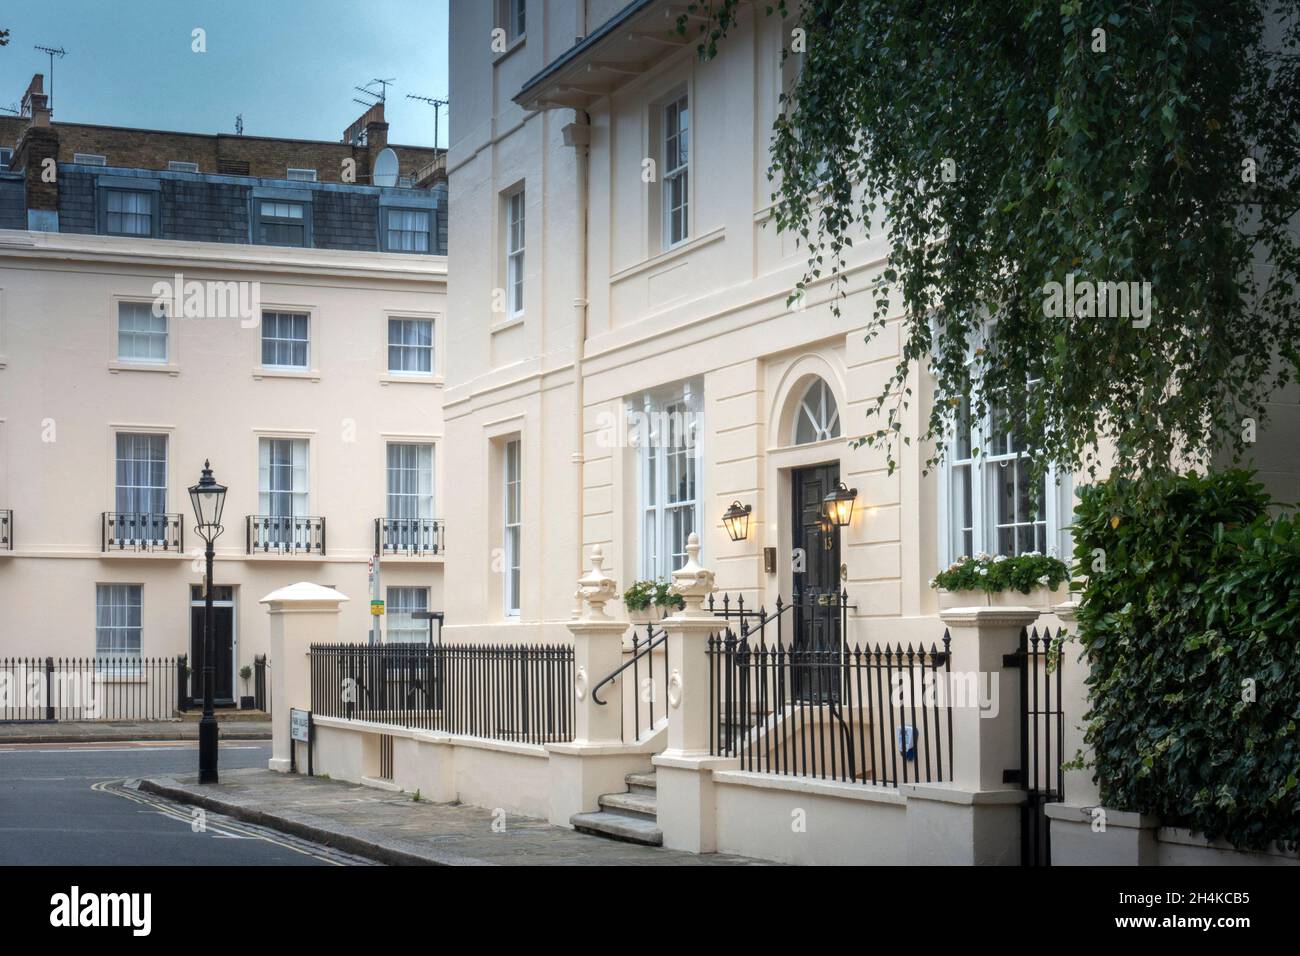 Regent's Park, Londra. Una residenza del 19 ° secolo: Angolo di Park Village West e Albany Street. Immobiliare di fascia alta, senza persone, architetto: John Nash Foto Stock